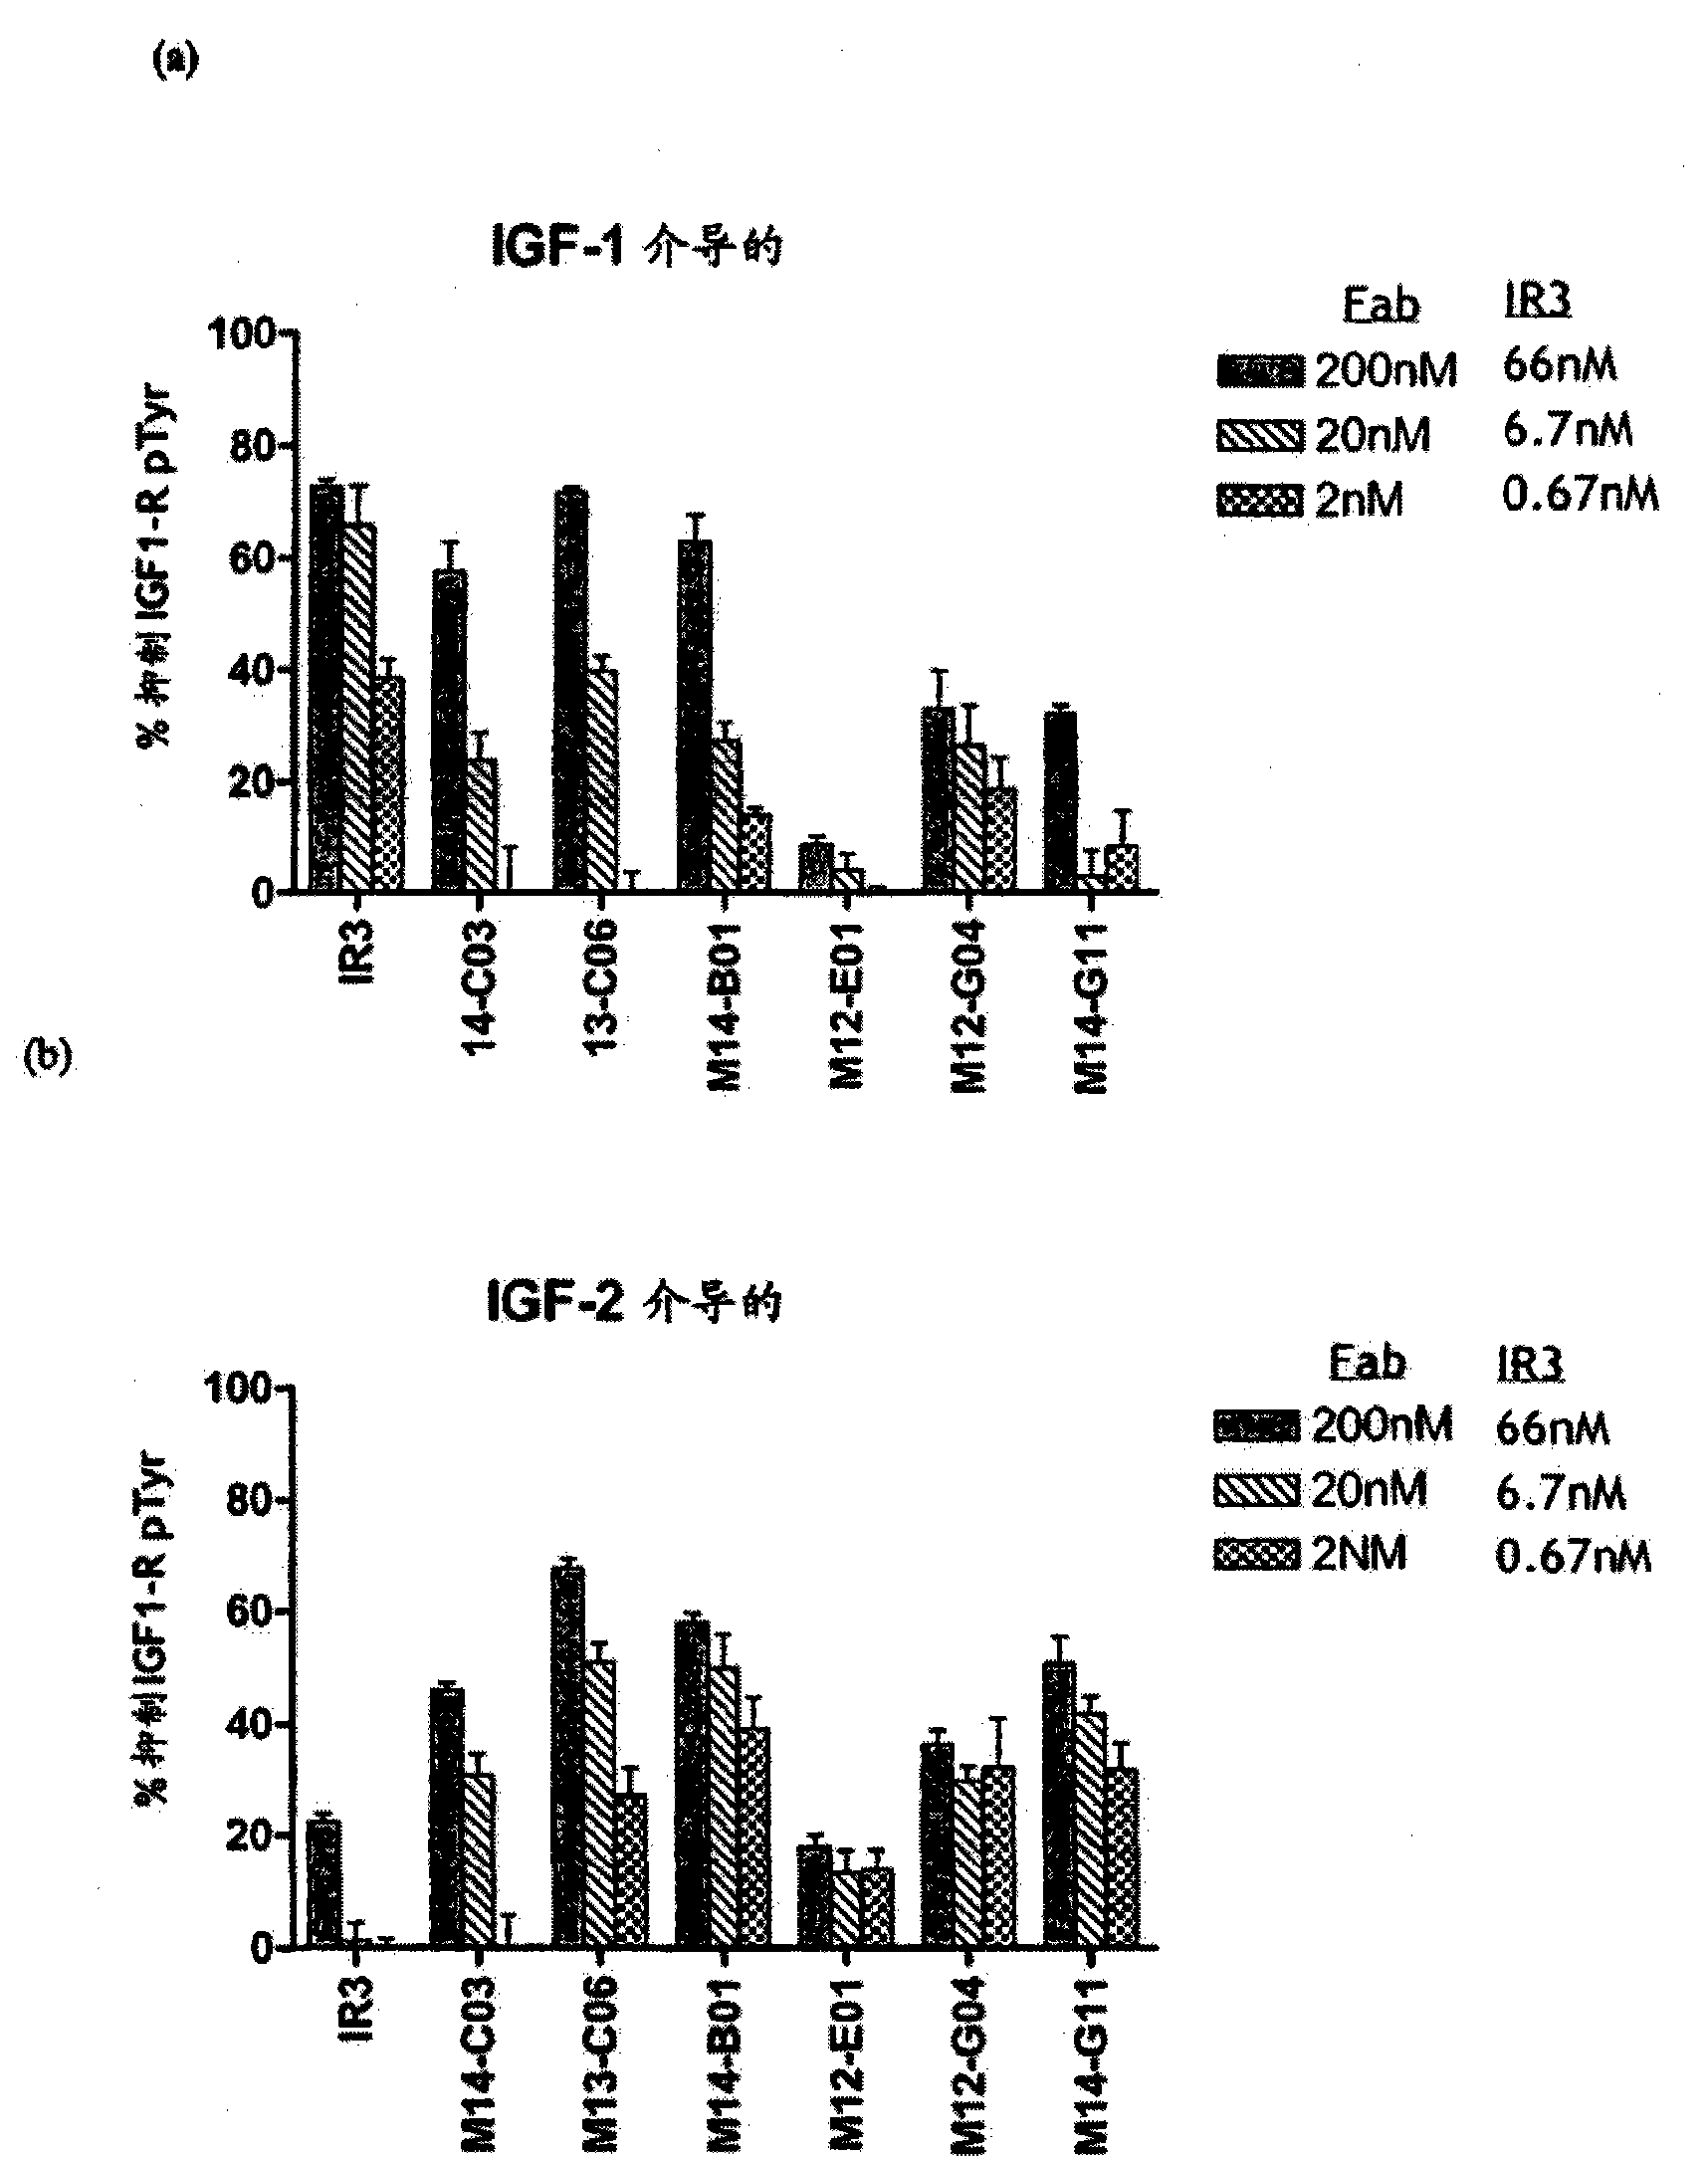 Anti-IGF-1R antibodies and uses thereof